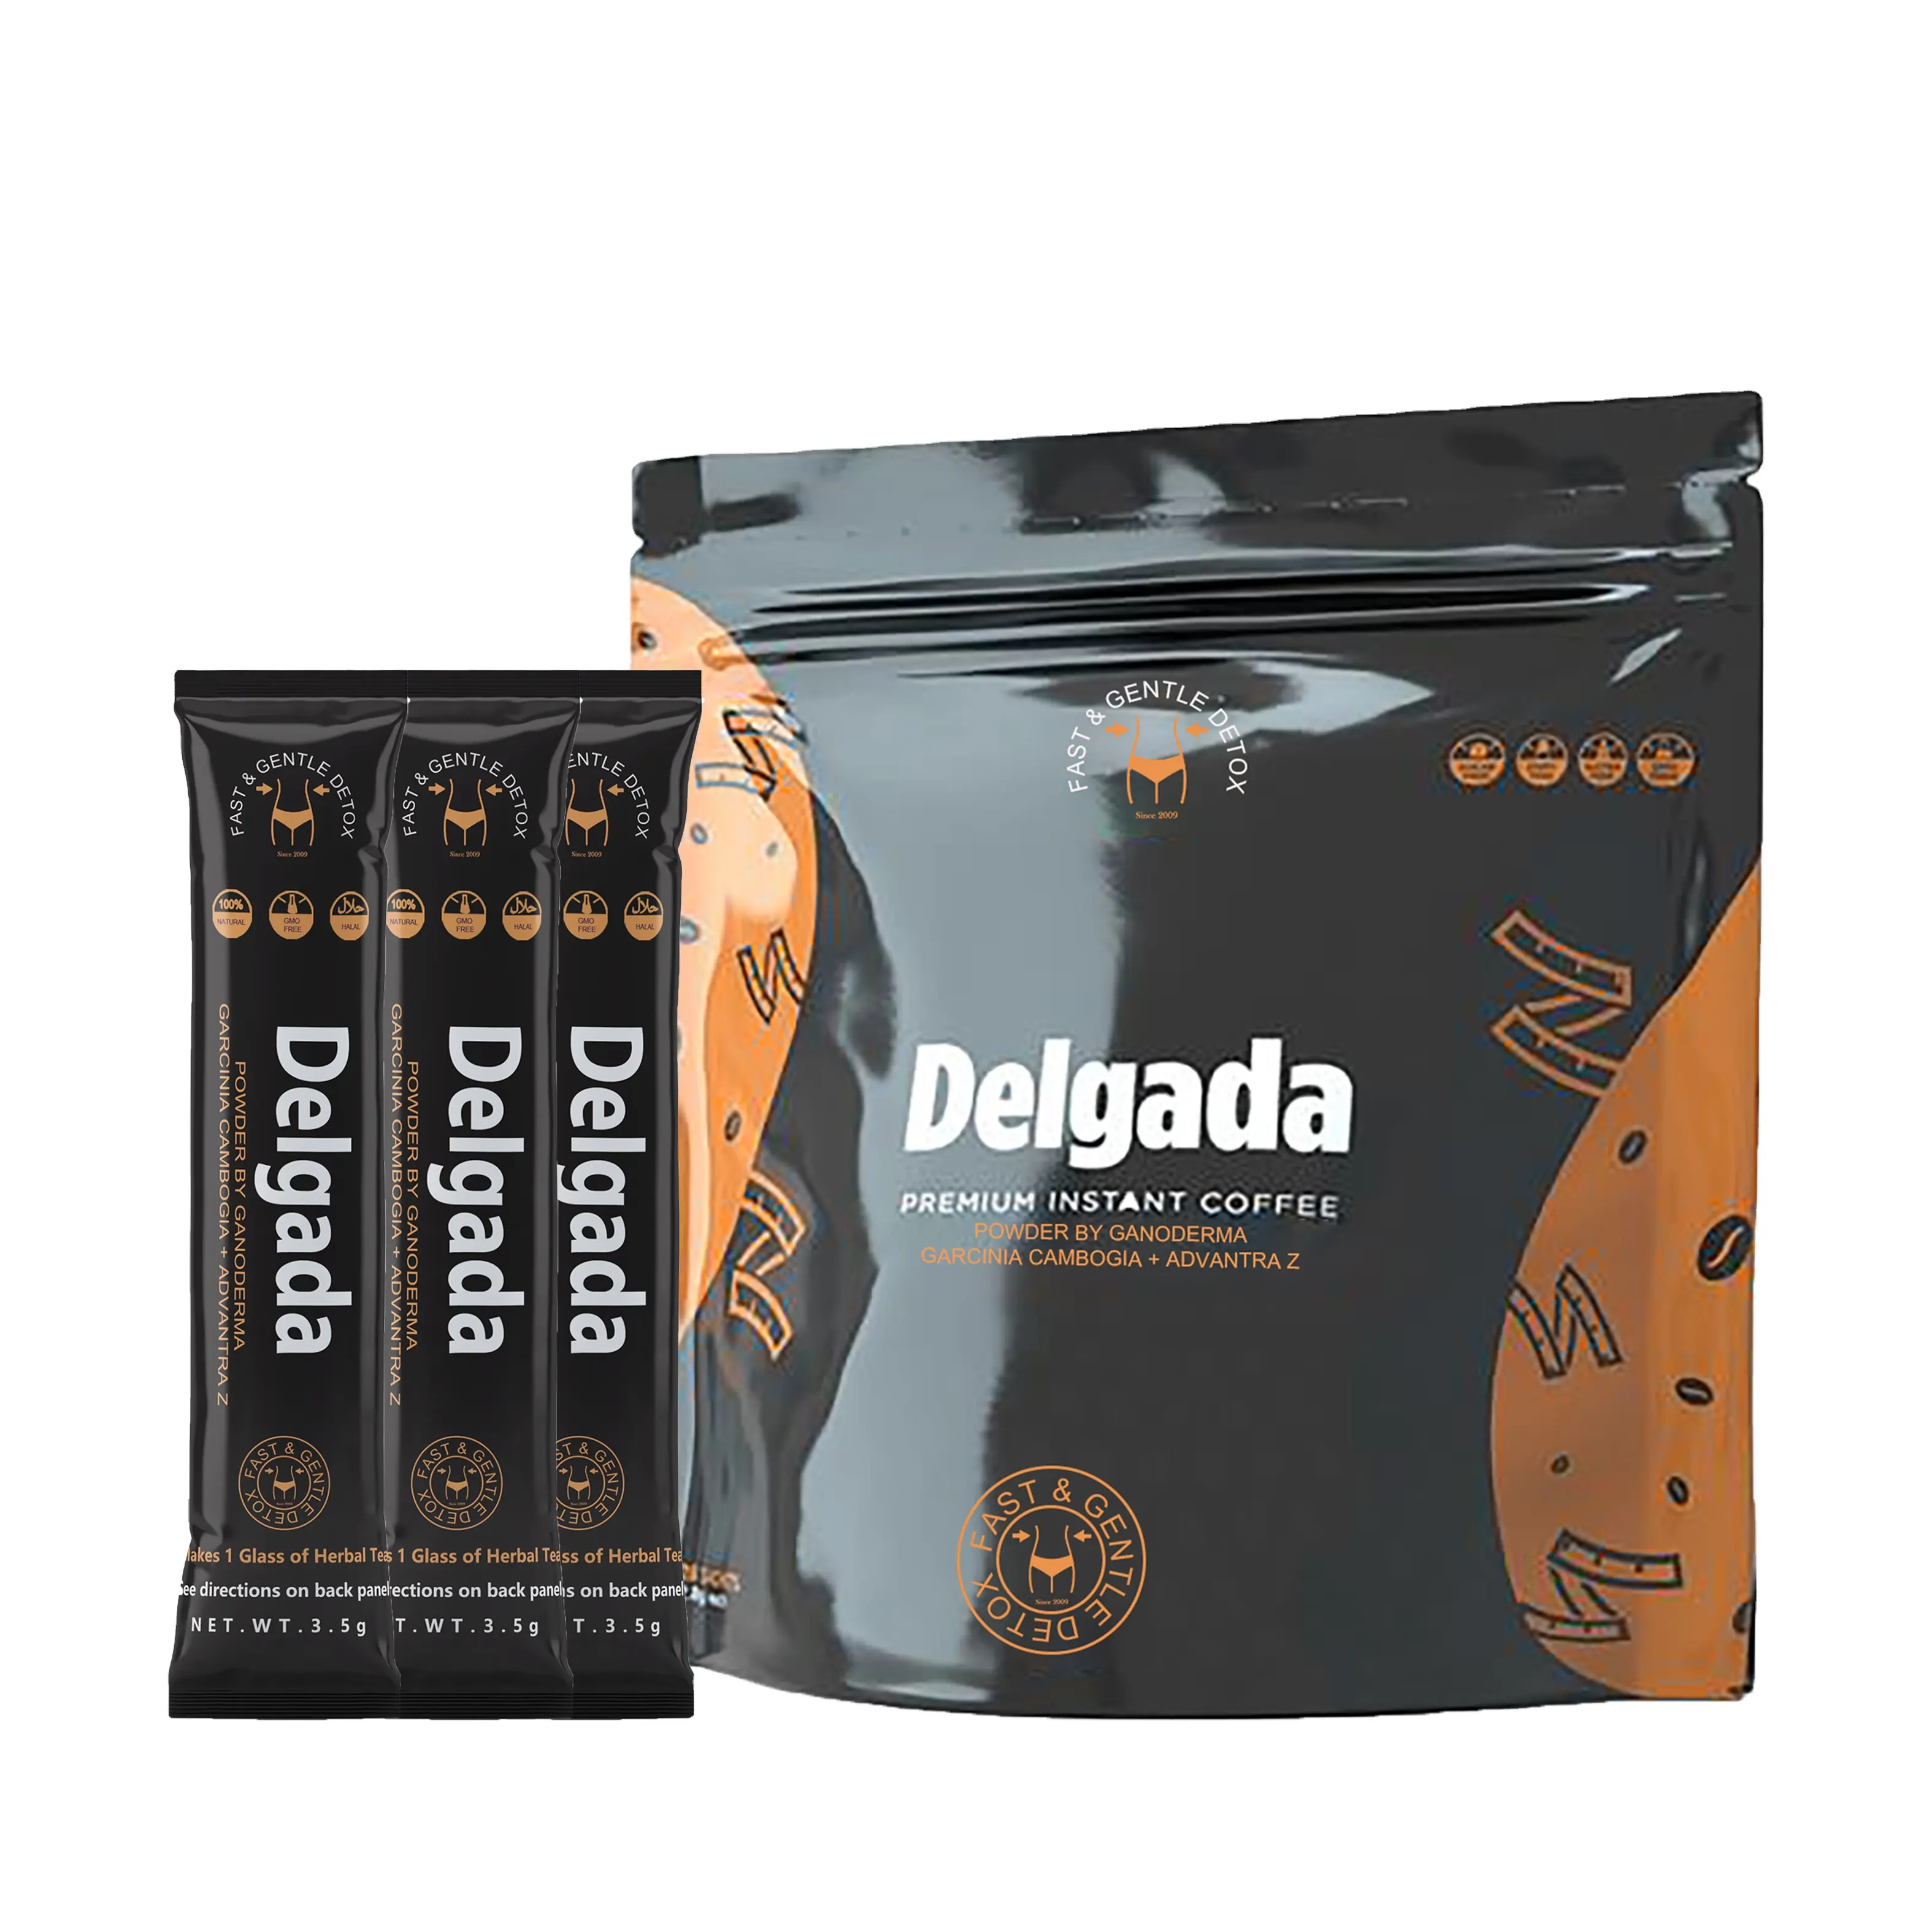 デルガダコーヒープレミアムアラビカインスタントコーヒーと霊芝が減量に役立ちますボディデトックスカスタムサービスが利用可能